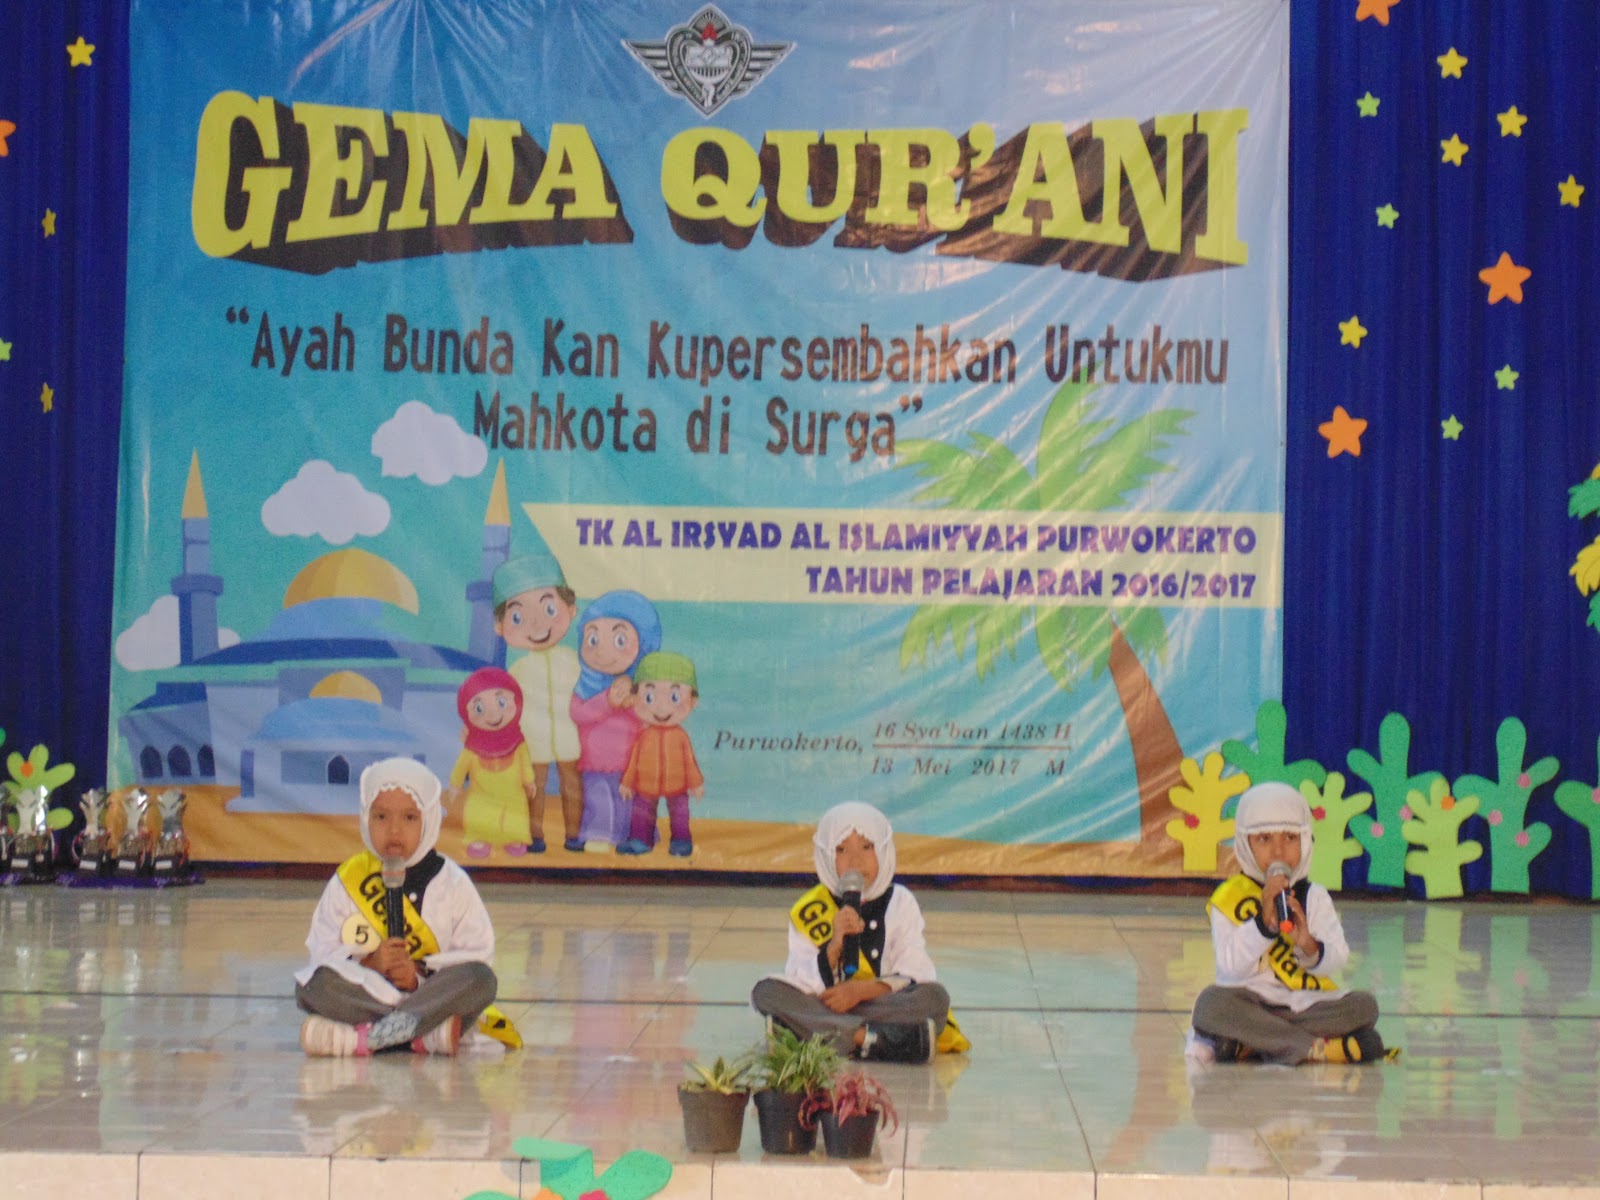 Sabtu 13 05 2017 TK A dan TK Al Irsyad mengikuti kegiatan Gema Qurani Acara berlangsung di Balai Desa Purwokerto Wetan dengan mengambil Tema “